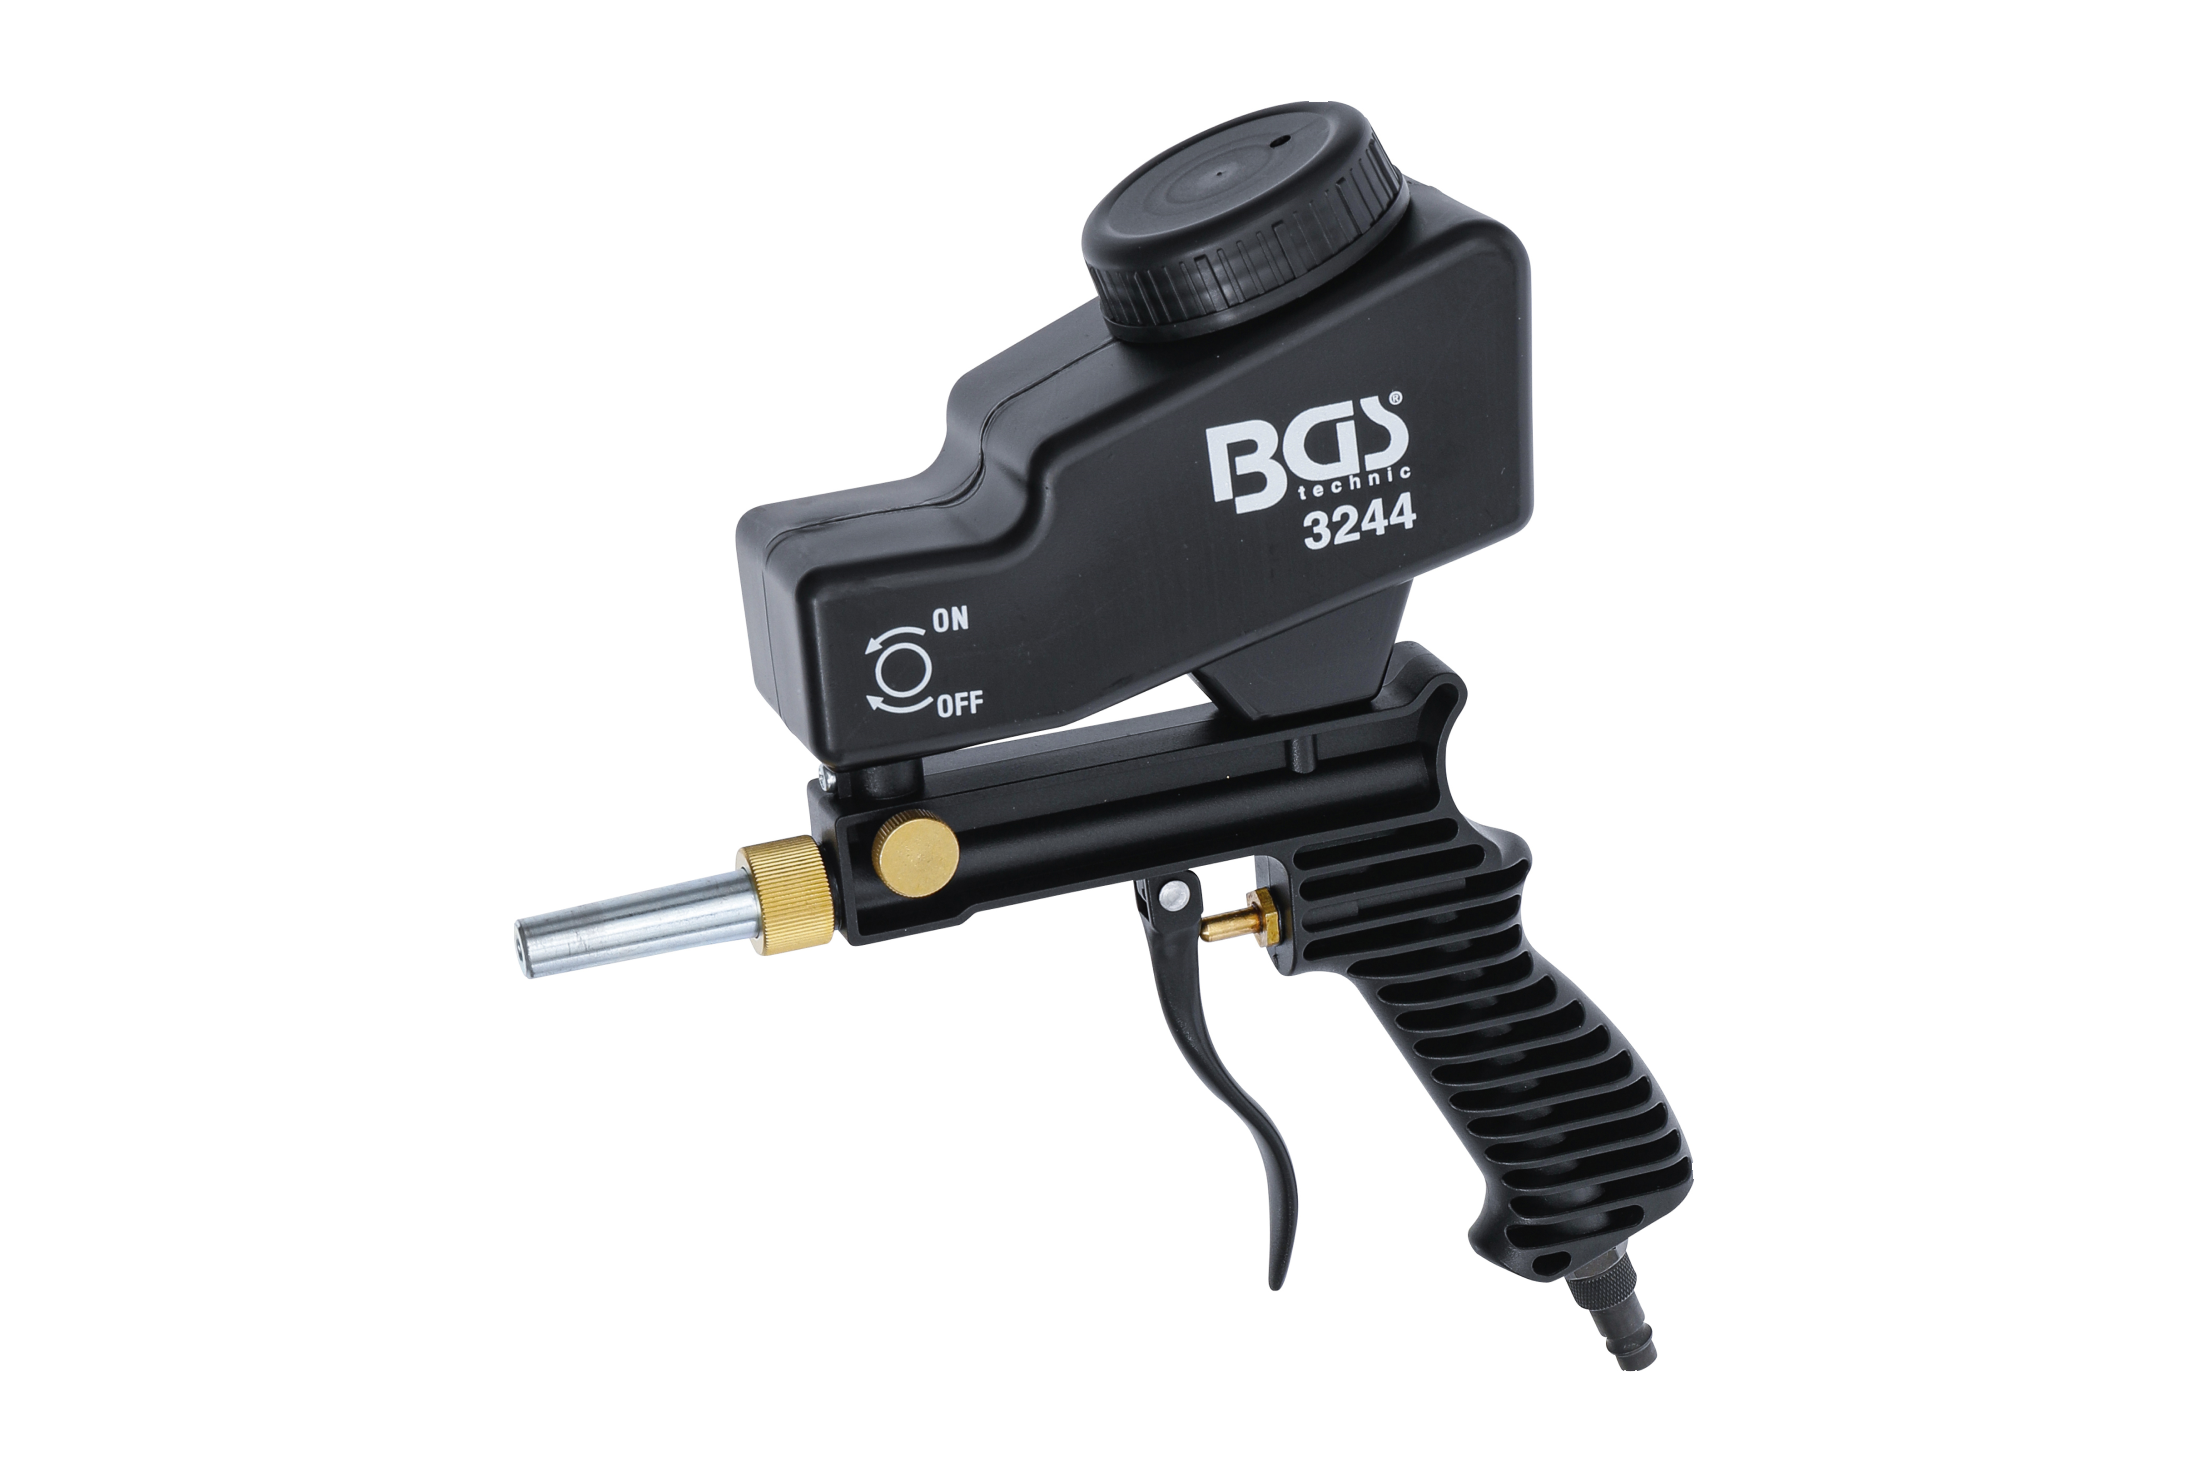 Bild der BGS Druckluft-Sandstrahlpistole